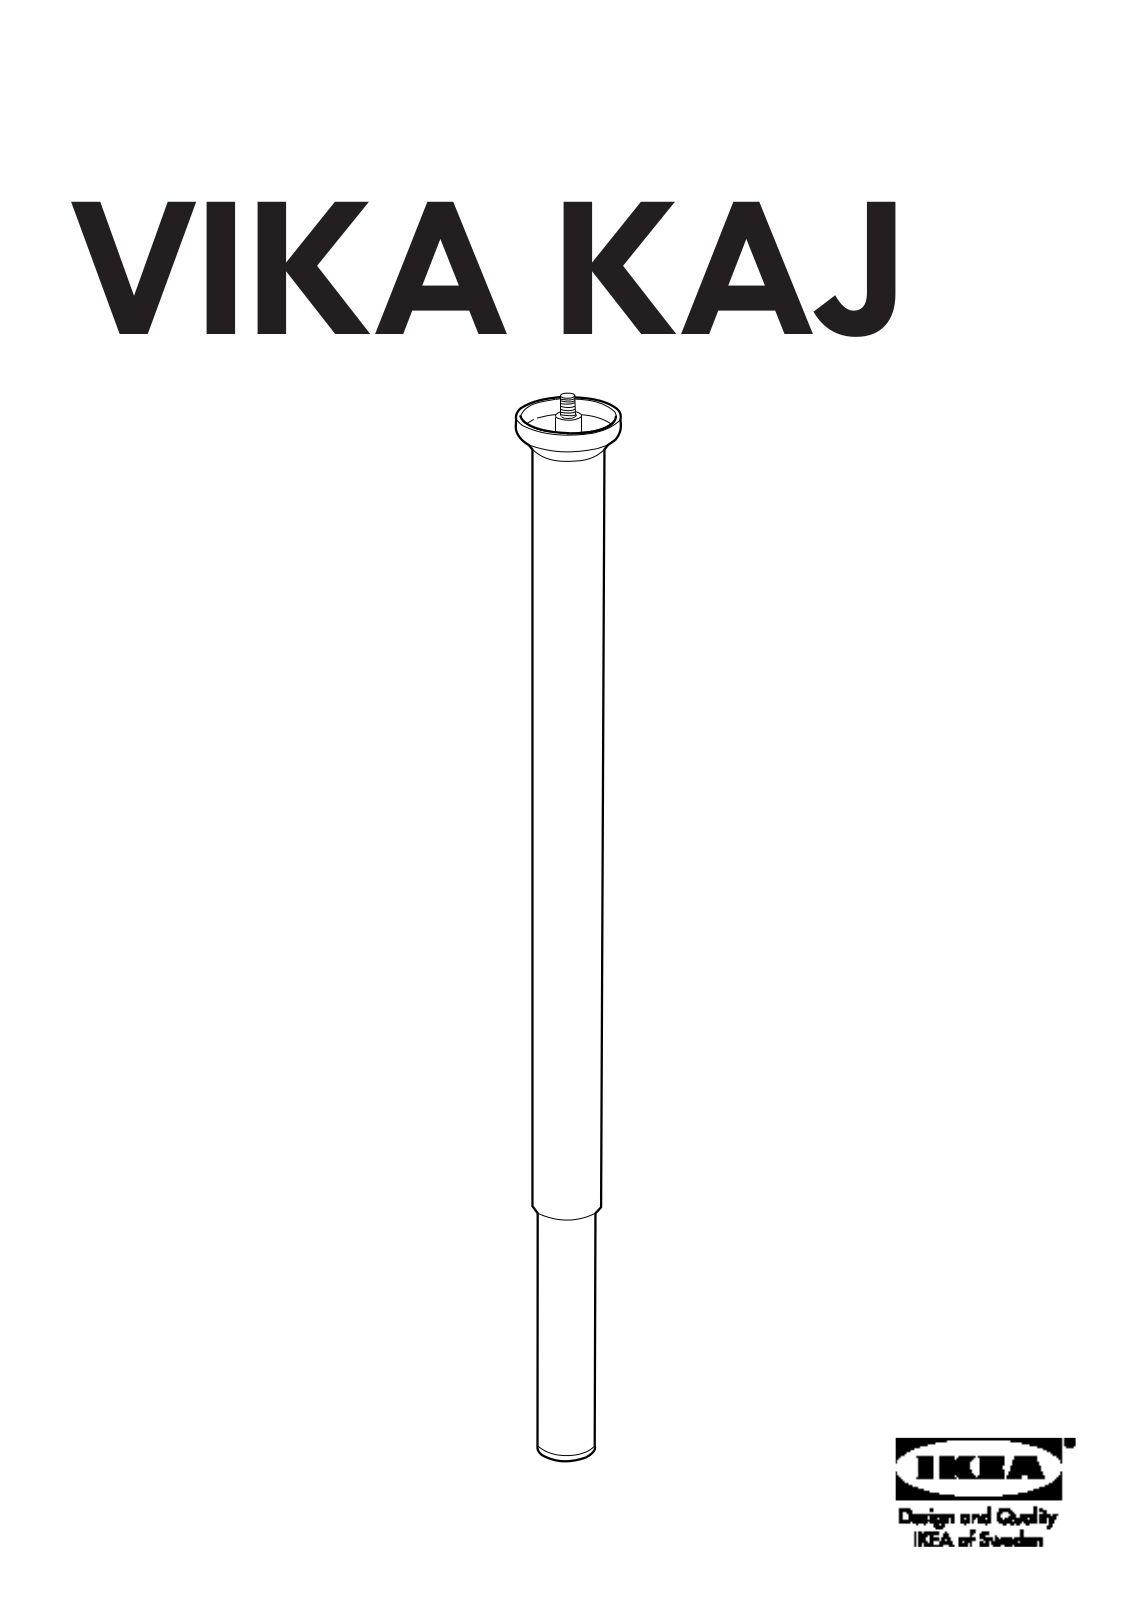 IKEA VIKA KAJ ADJUSTABLE LEG Assembly Instruction